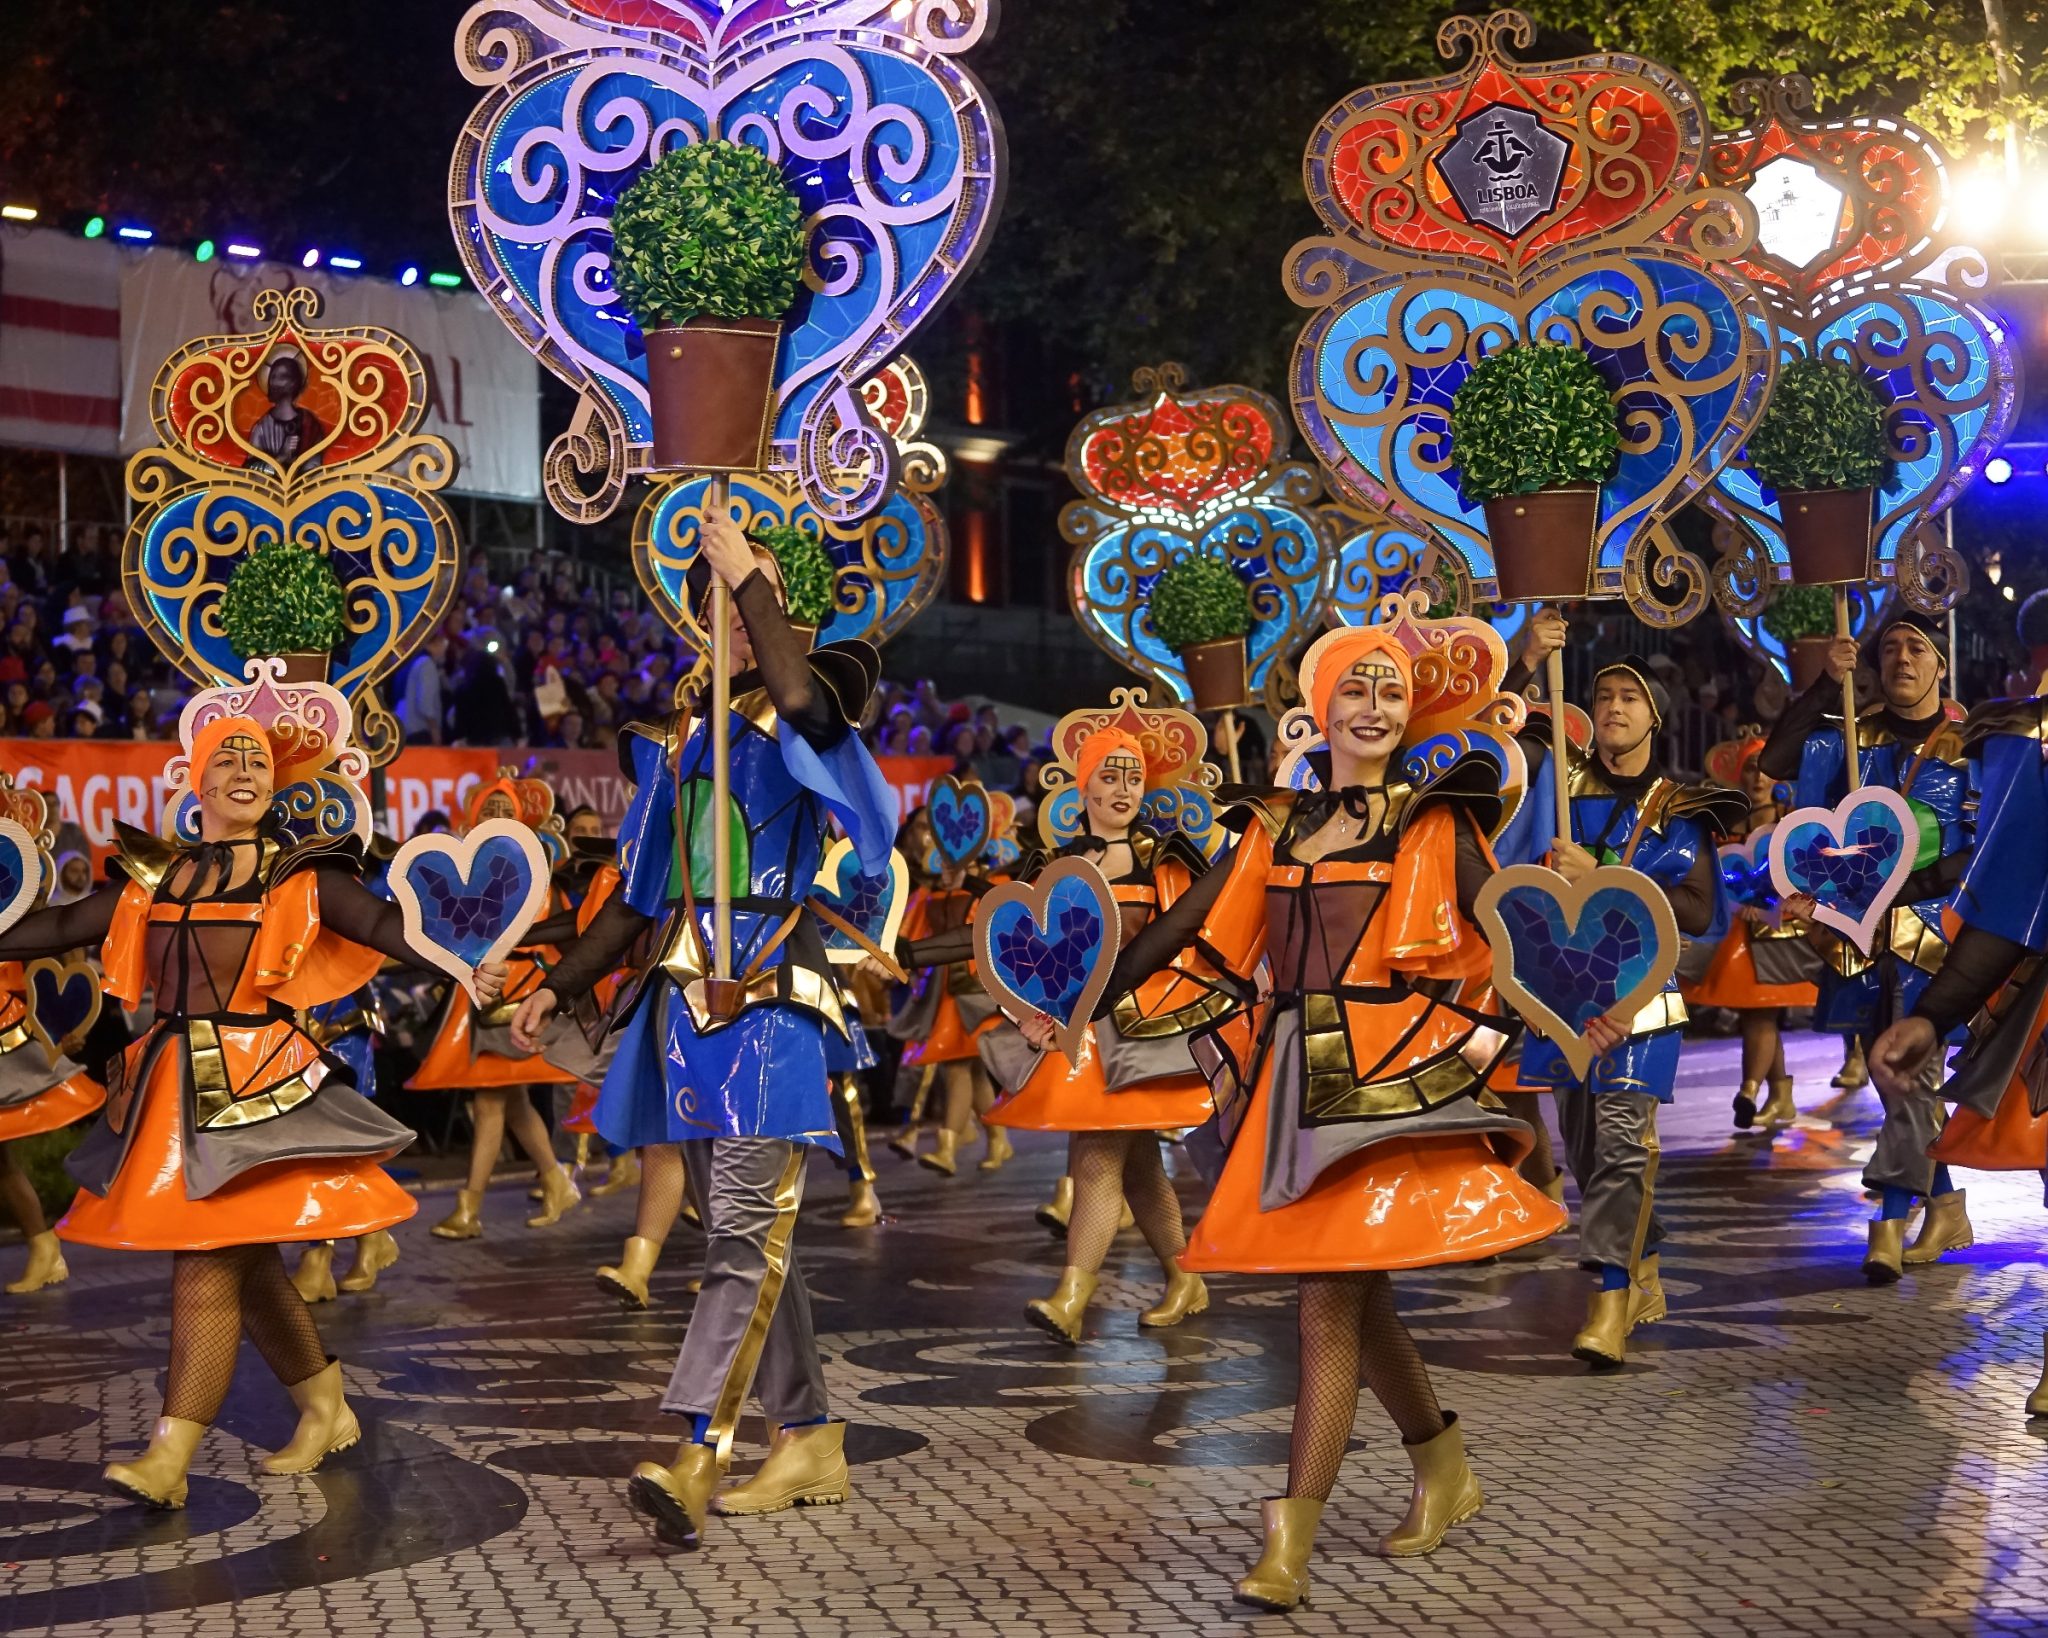 Um grupo de marchantes composto por homens e mulheres, elas com roupas cor-de-laranja e eles de roupas azuis e arcos altos nos braços, avançam para a esquerda da imagem enquanto sorriem.